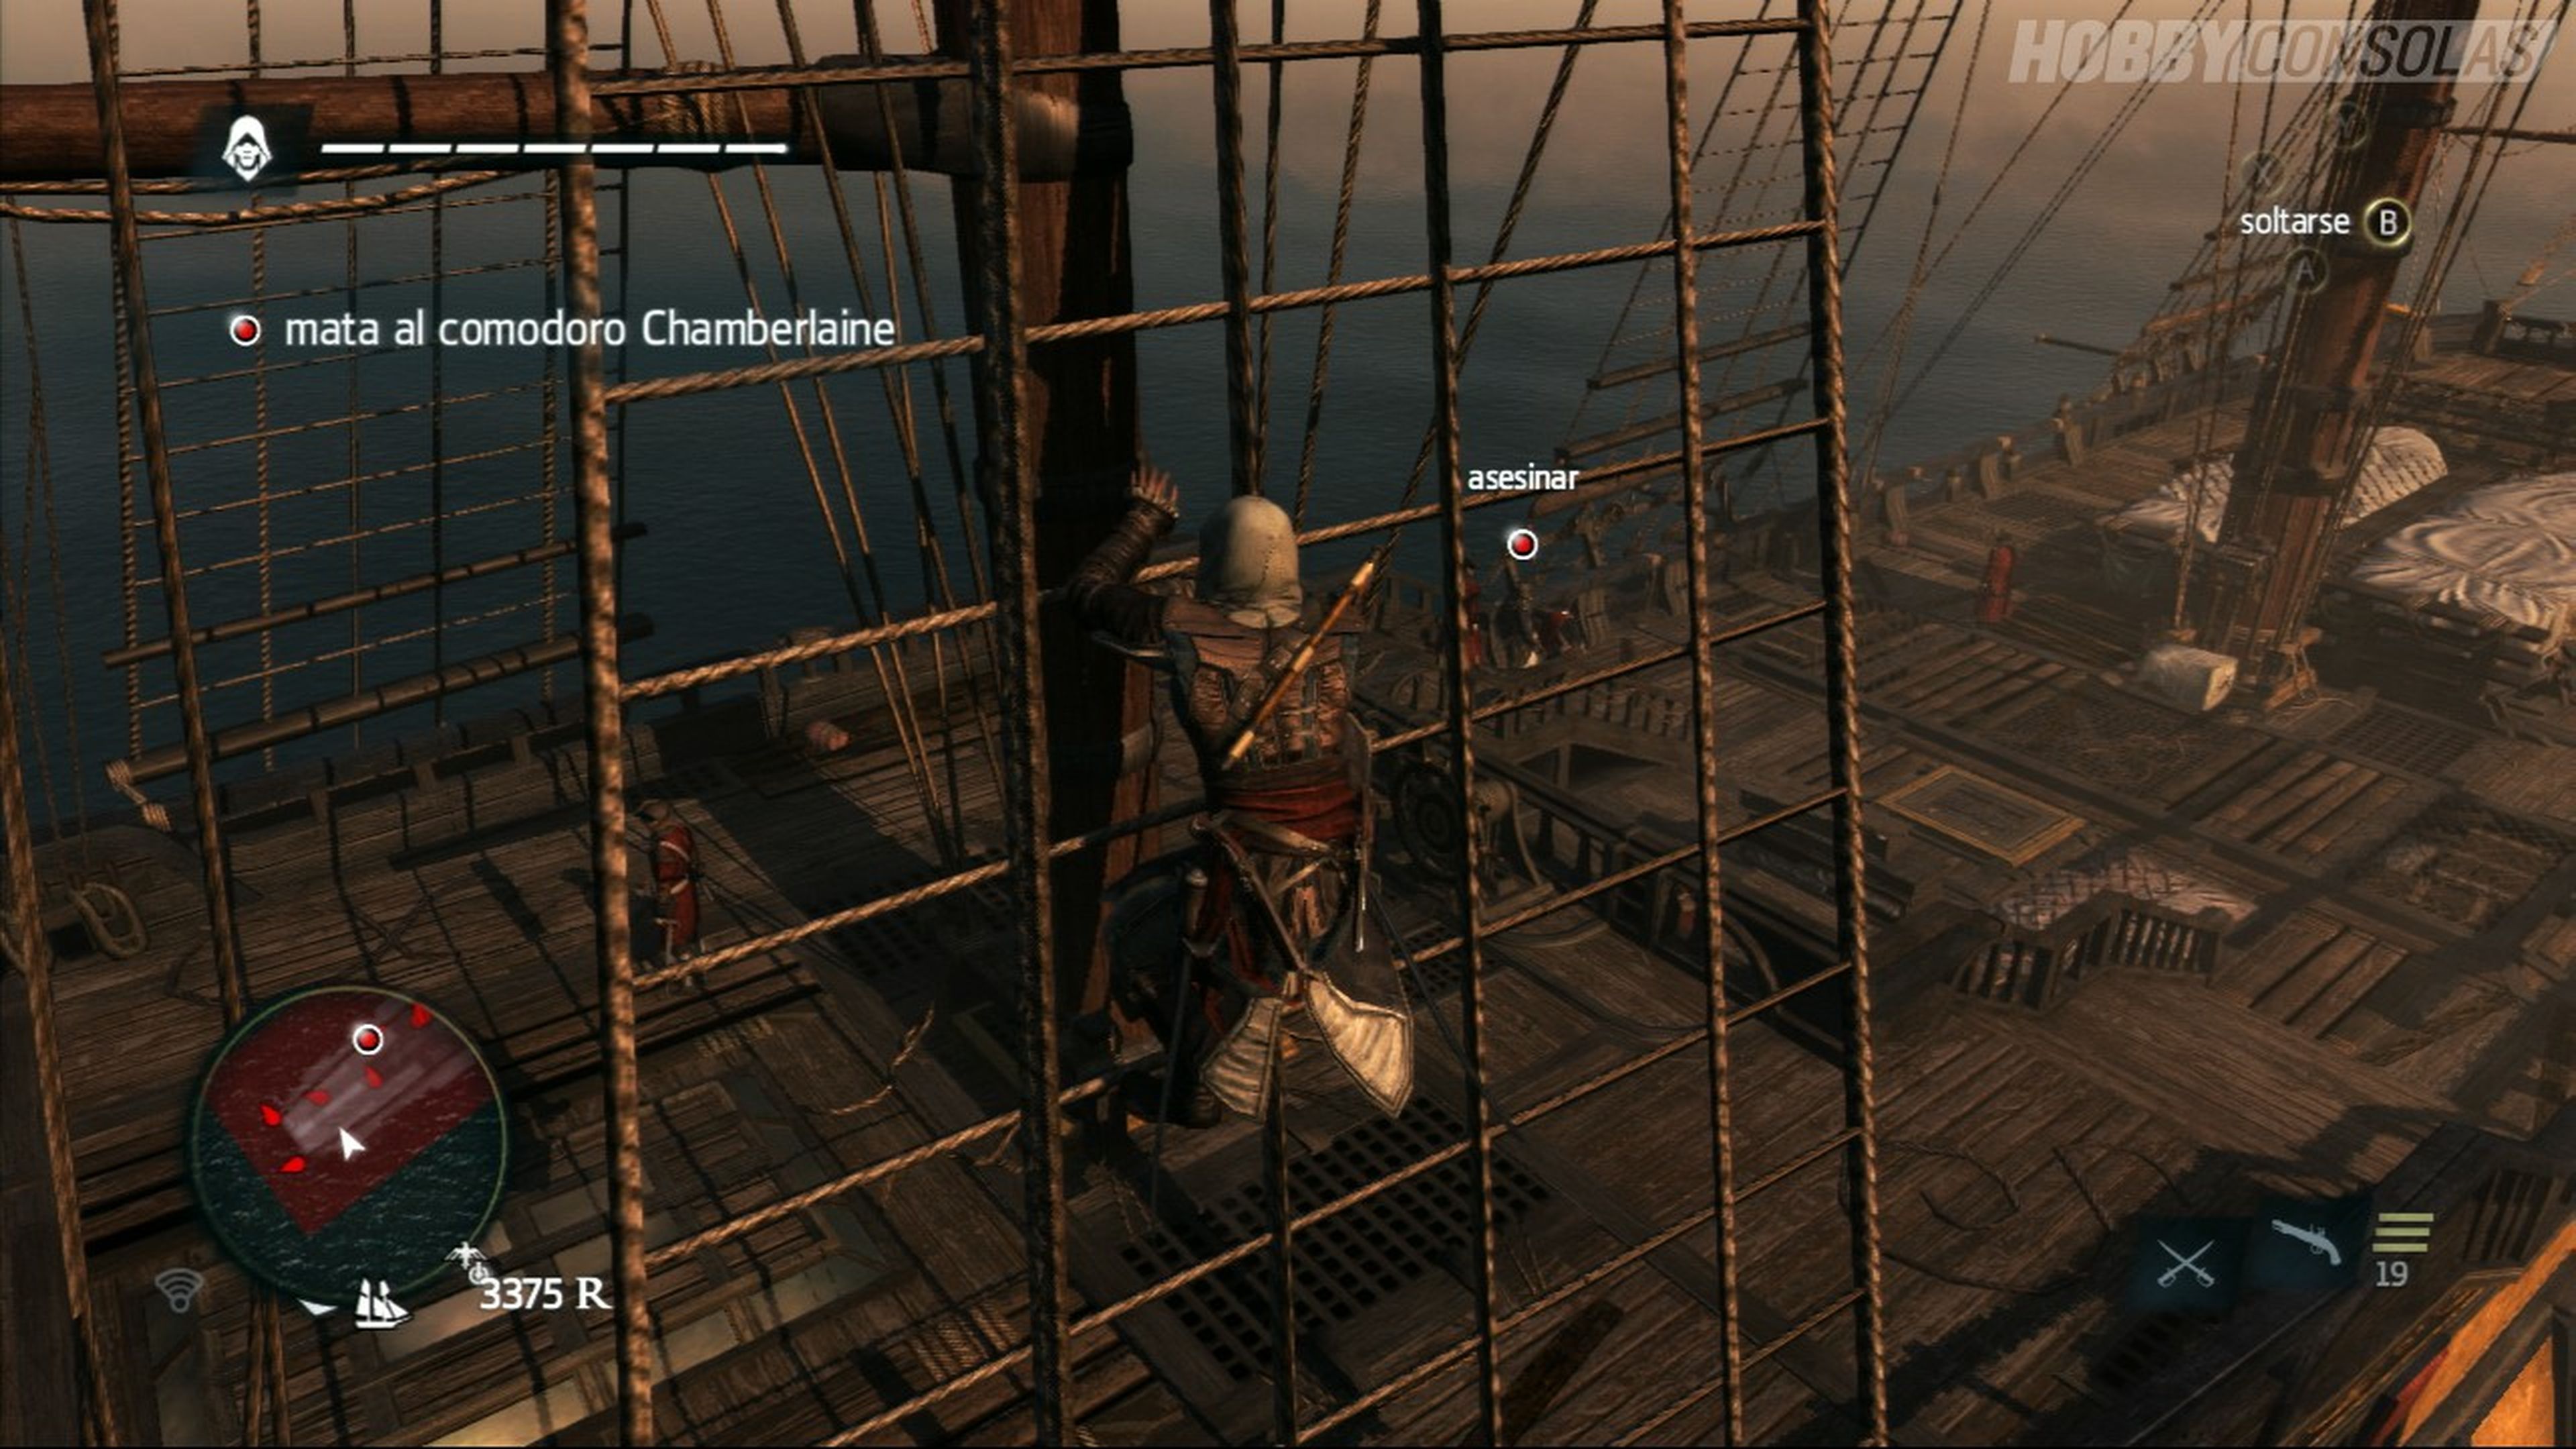 Análisis de Assassin's Creed IV en PS3 y Xbox 360